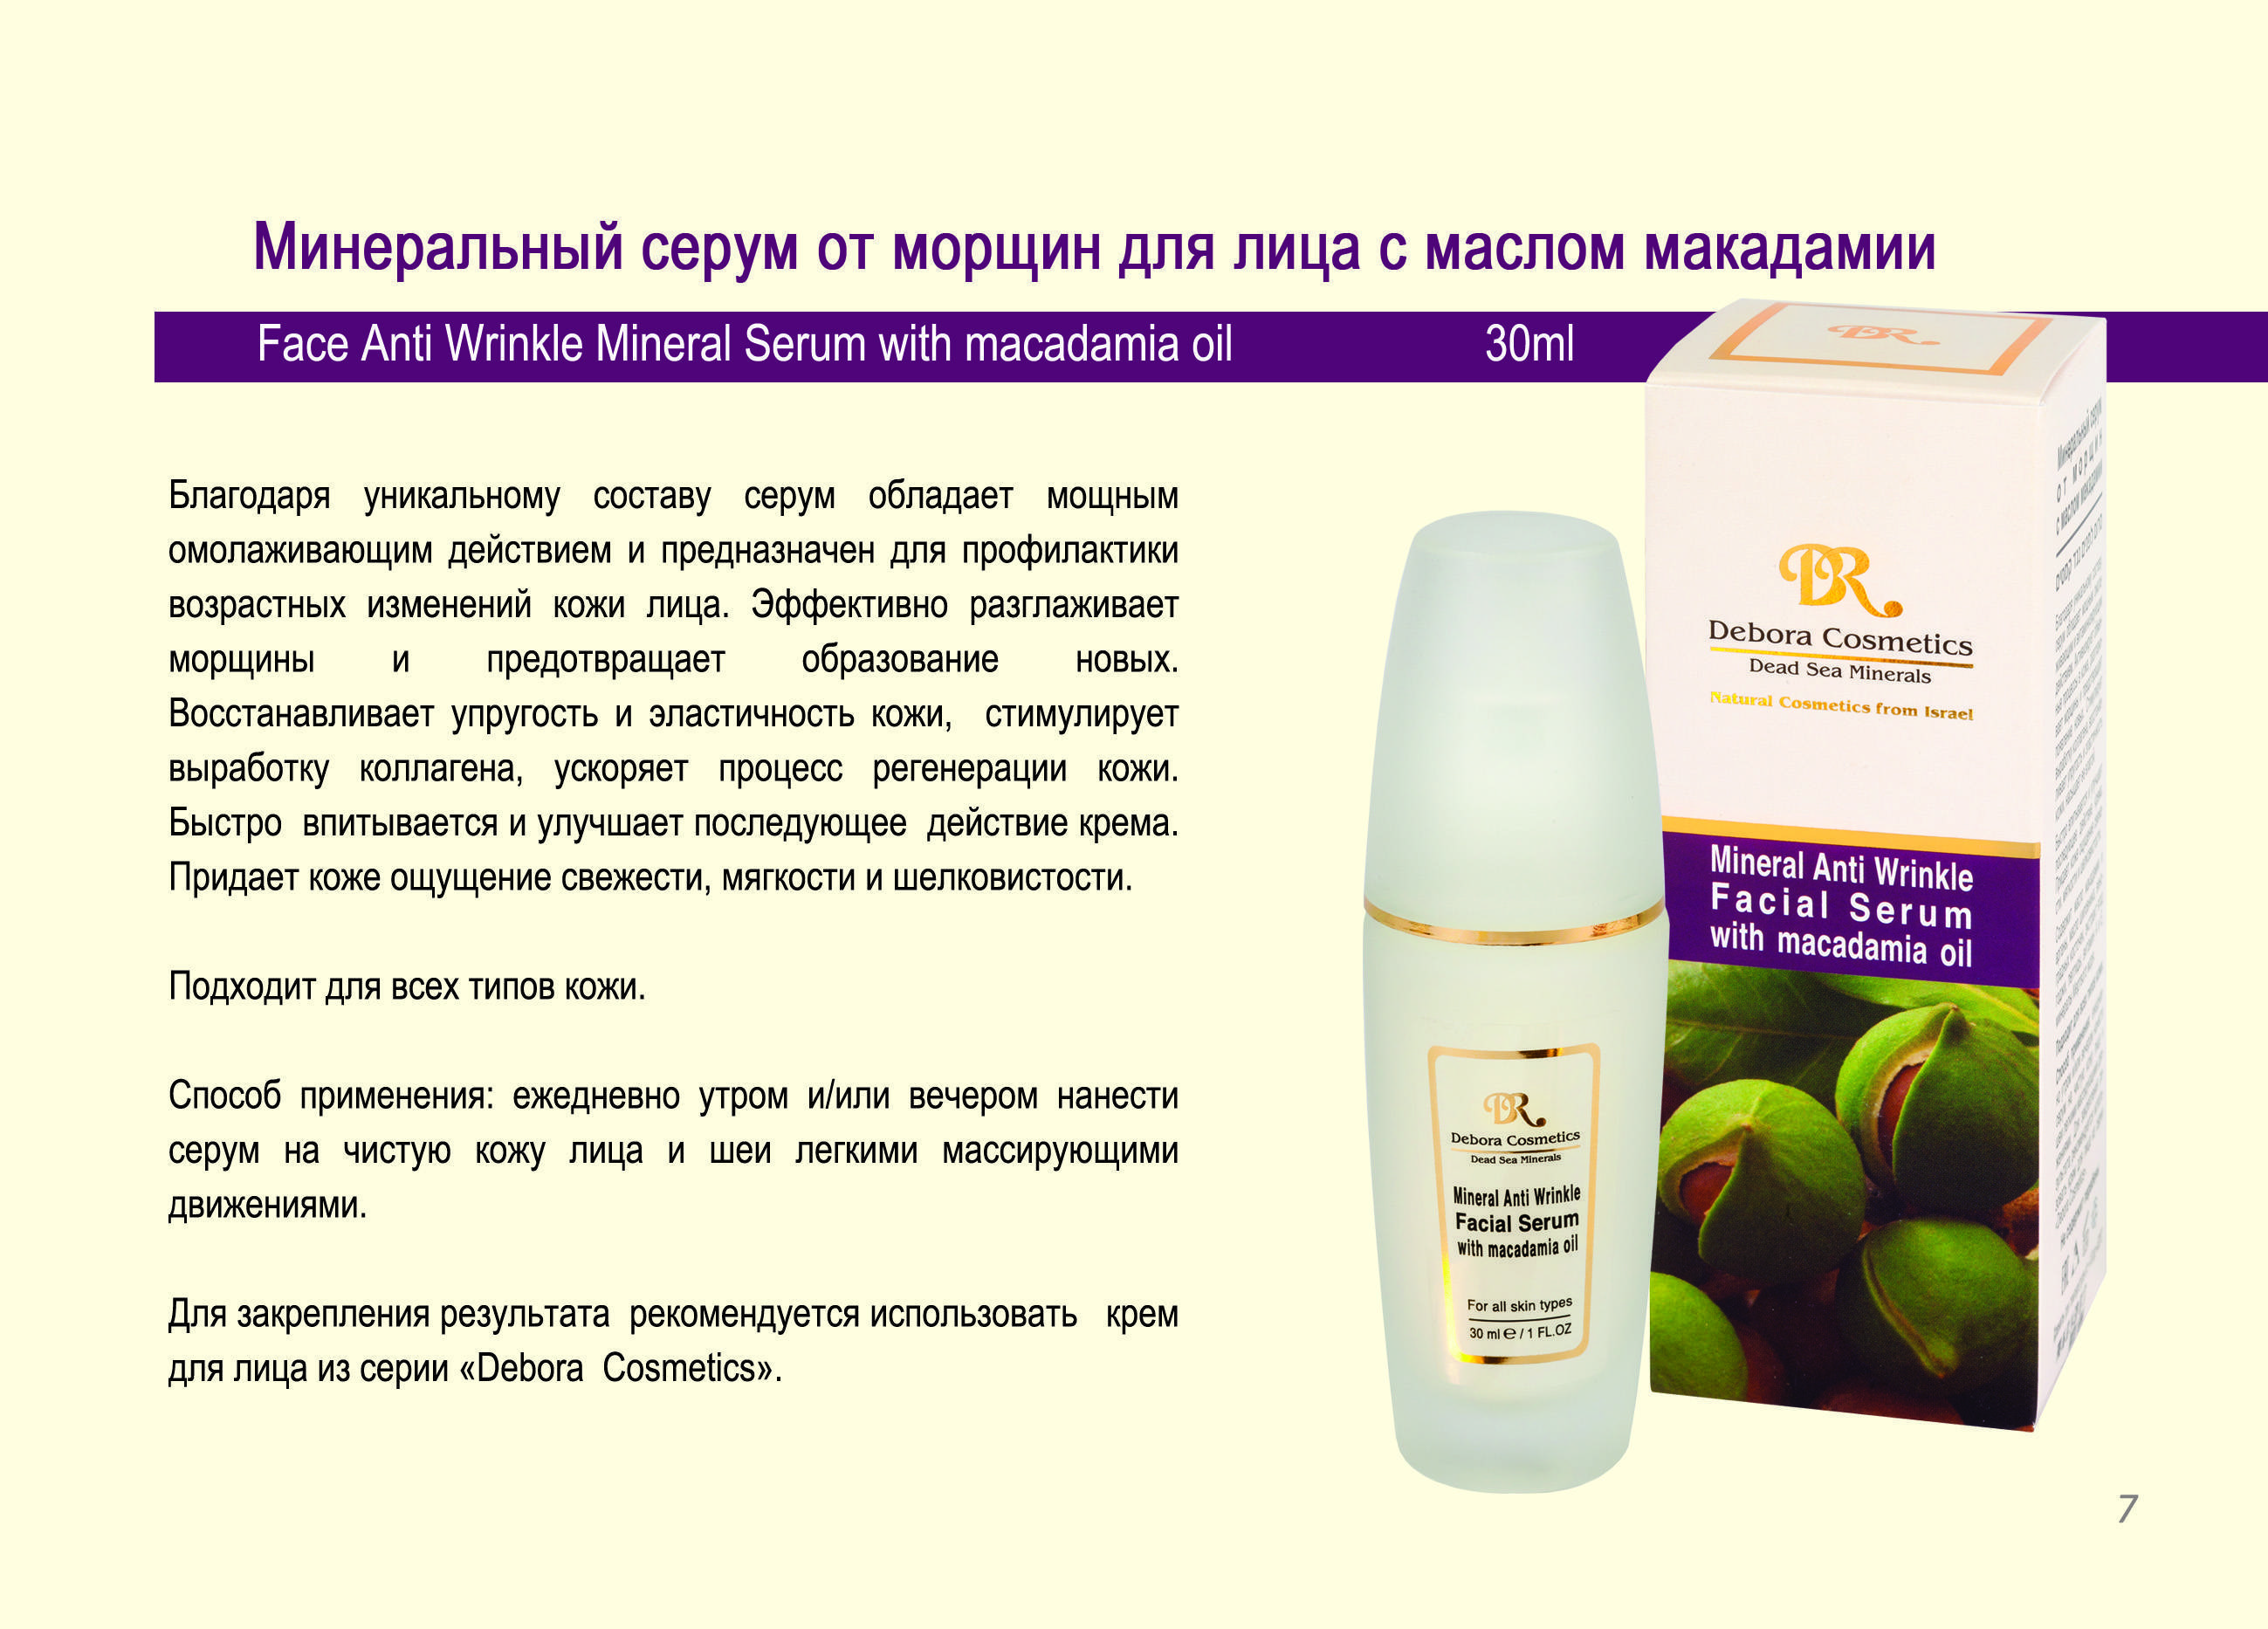 Персиковое масло для лица от морщин: отзывы косметологов, способы применения в домашних условиях, вокруг глаз